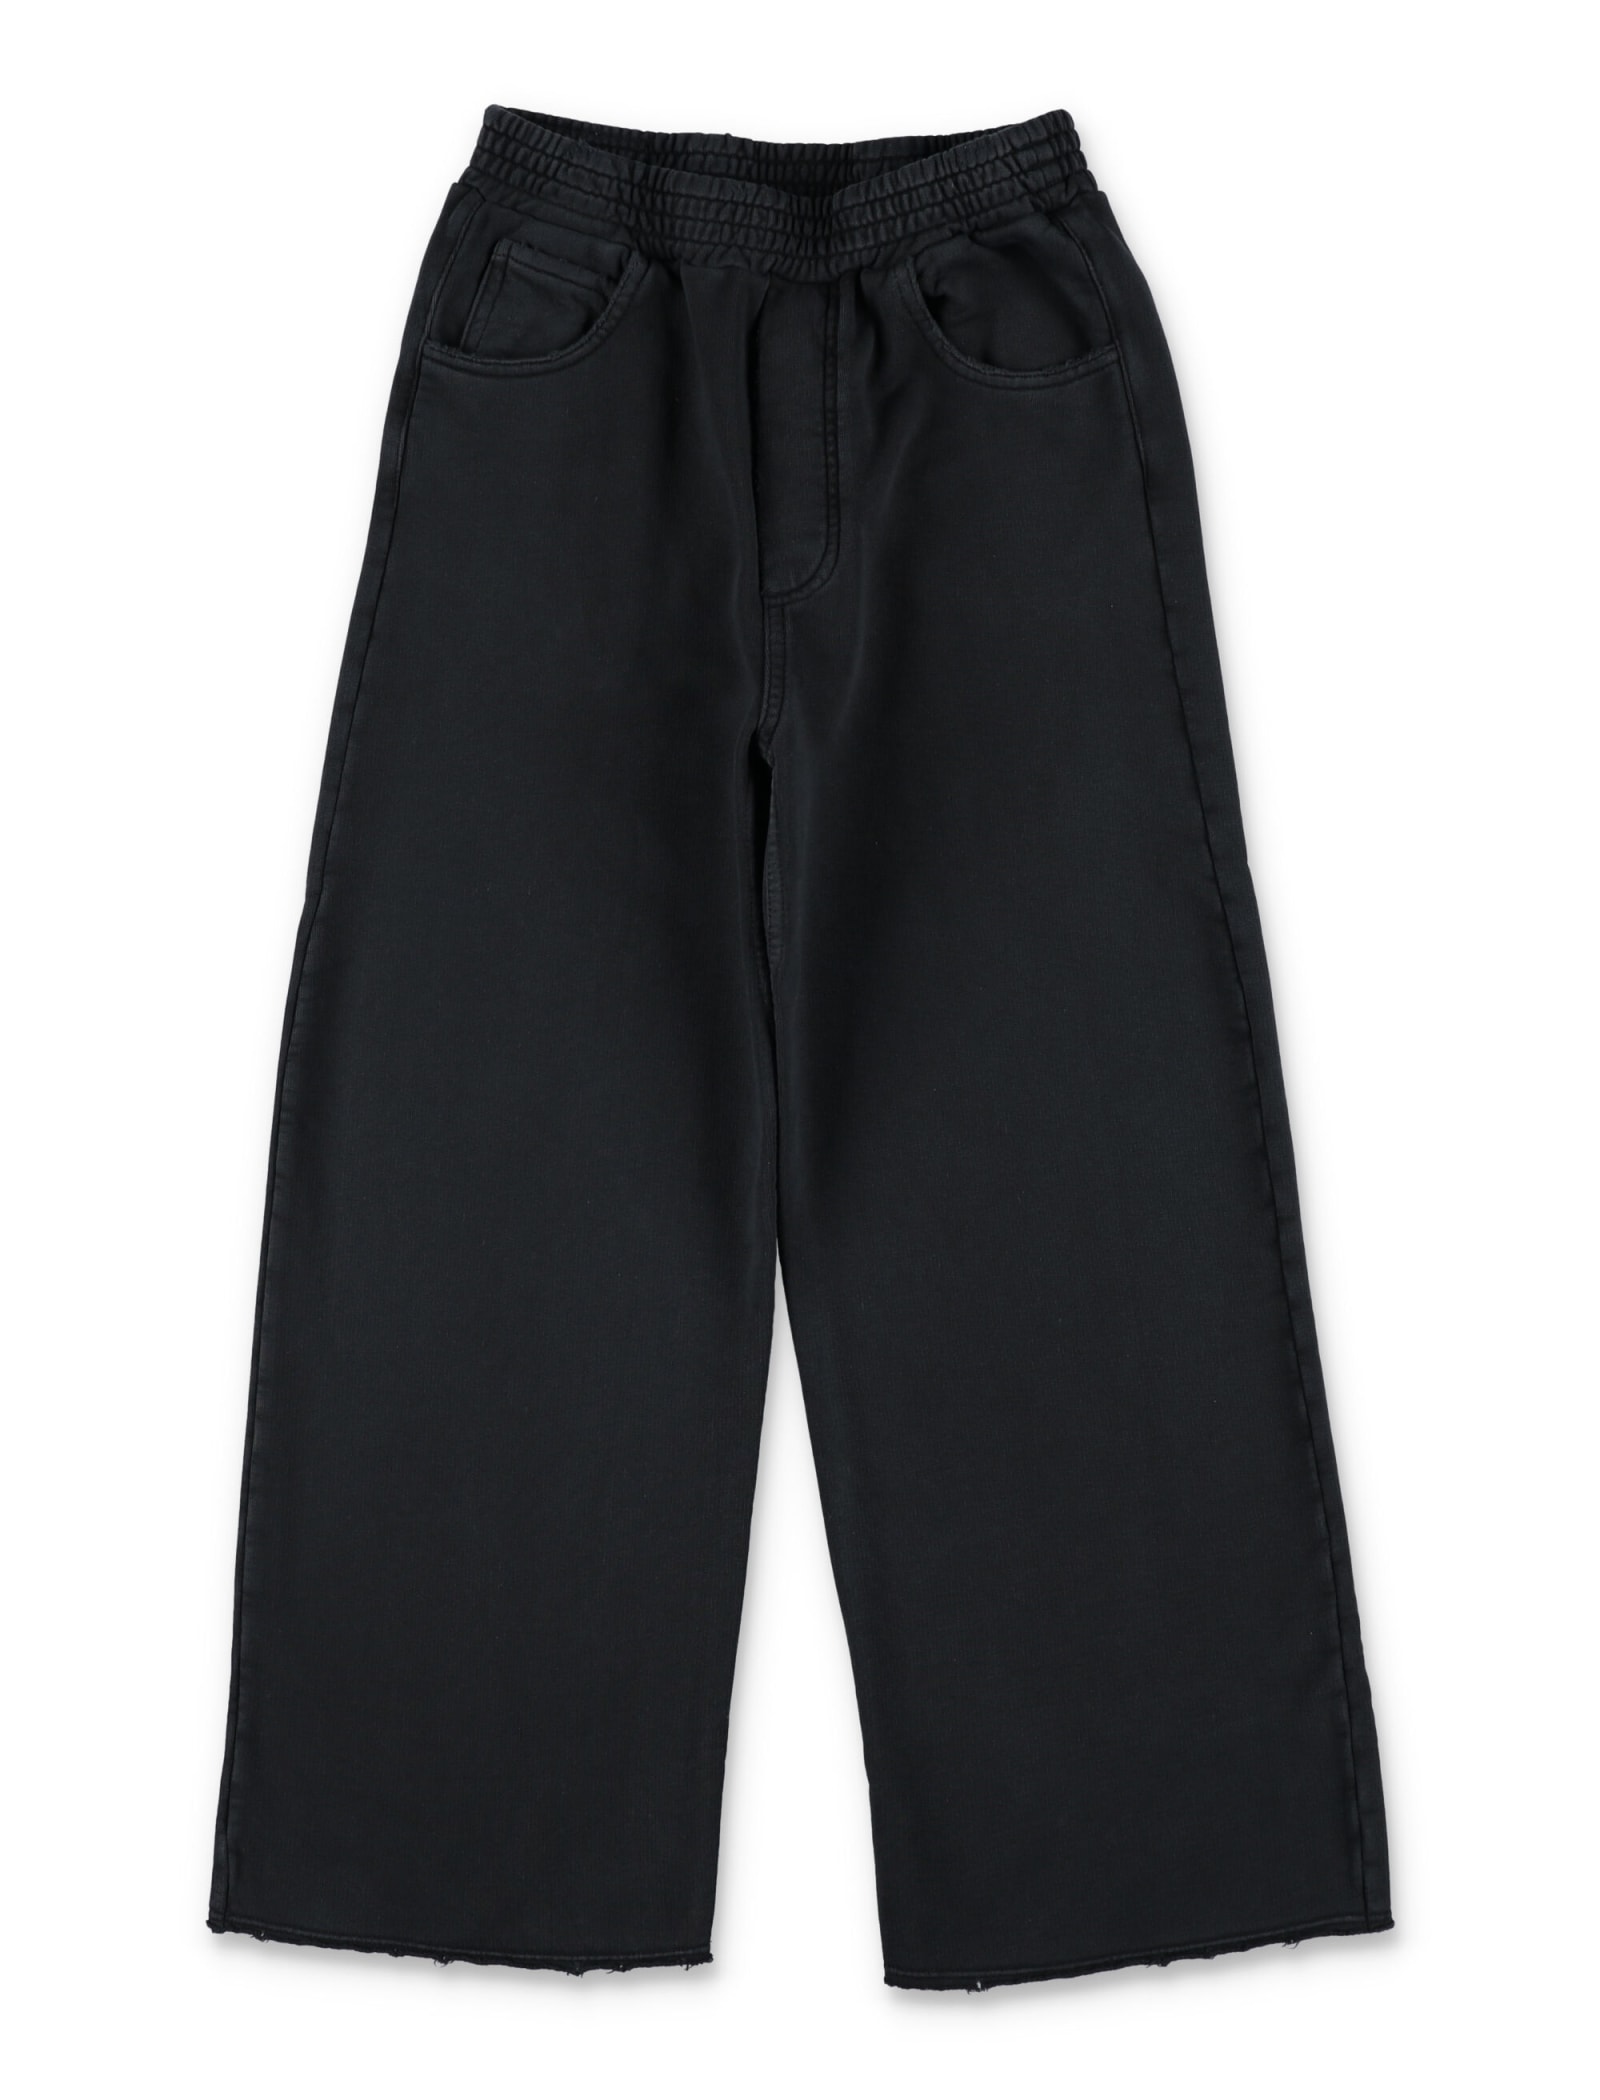 Mm6 Maison Margiela Kids' Fleece Pants In Black